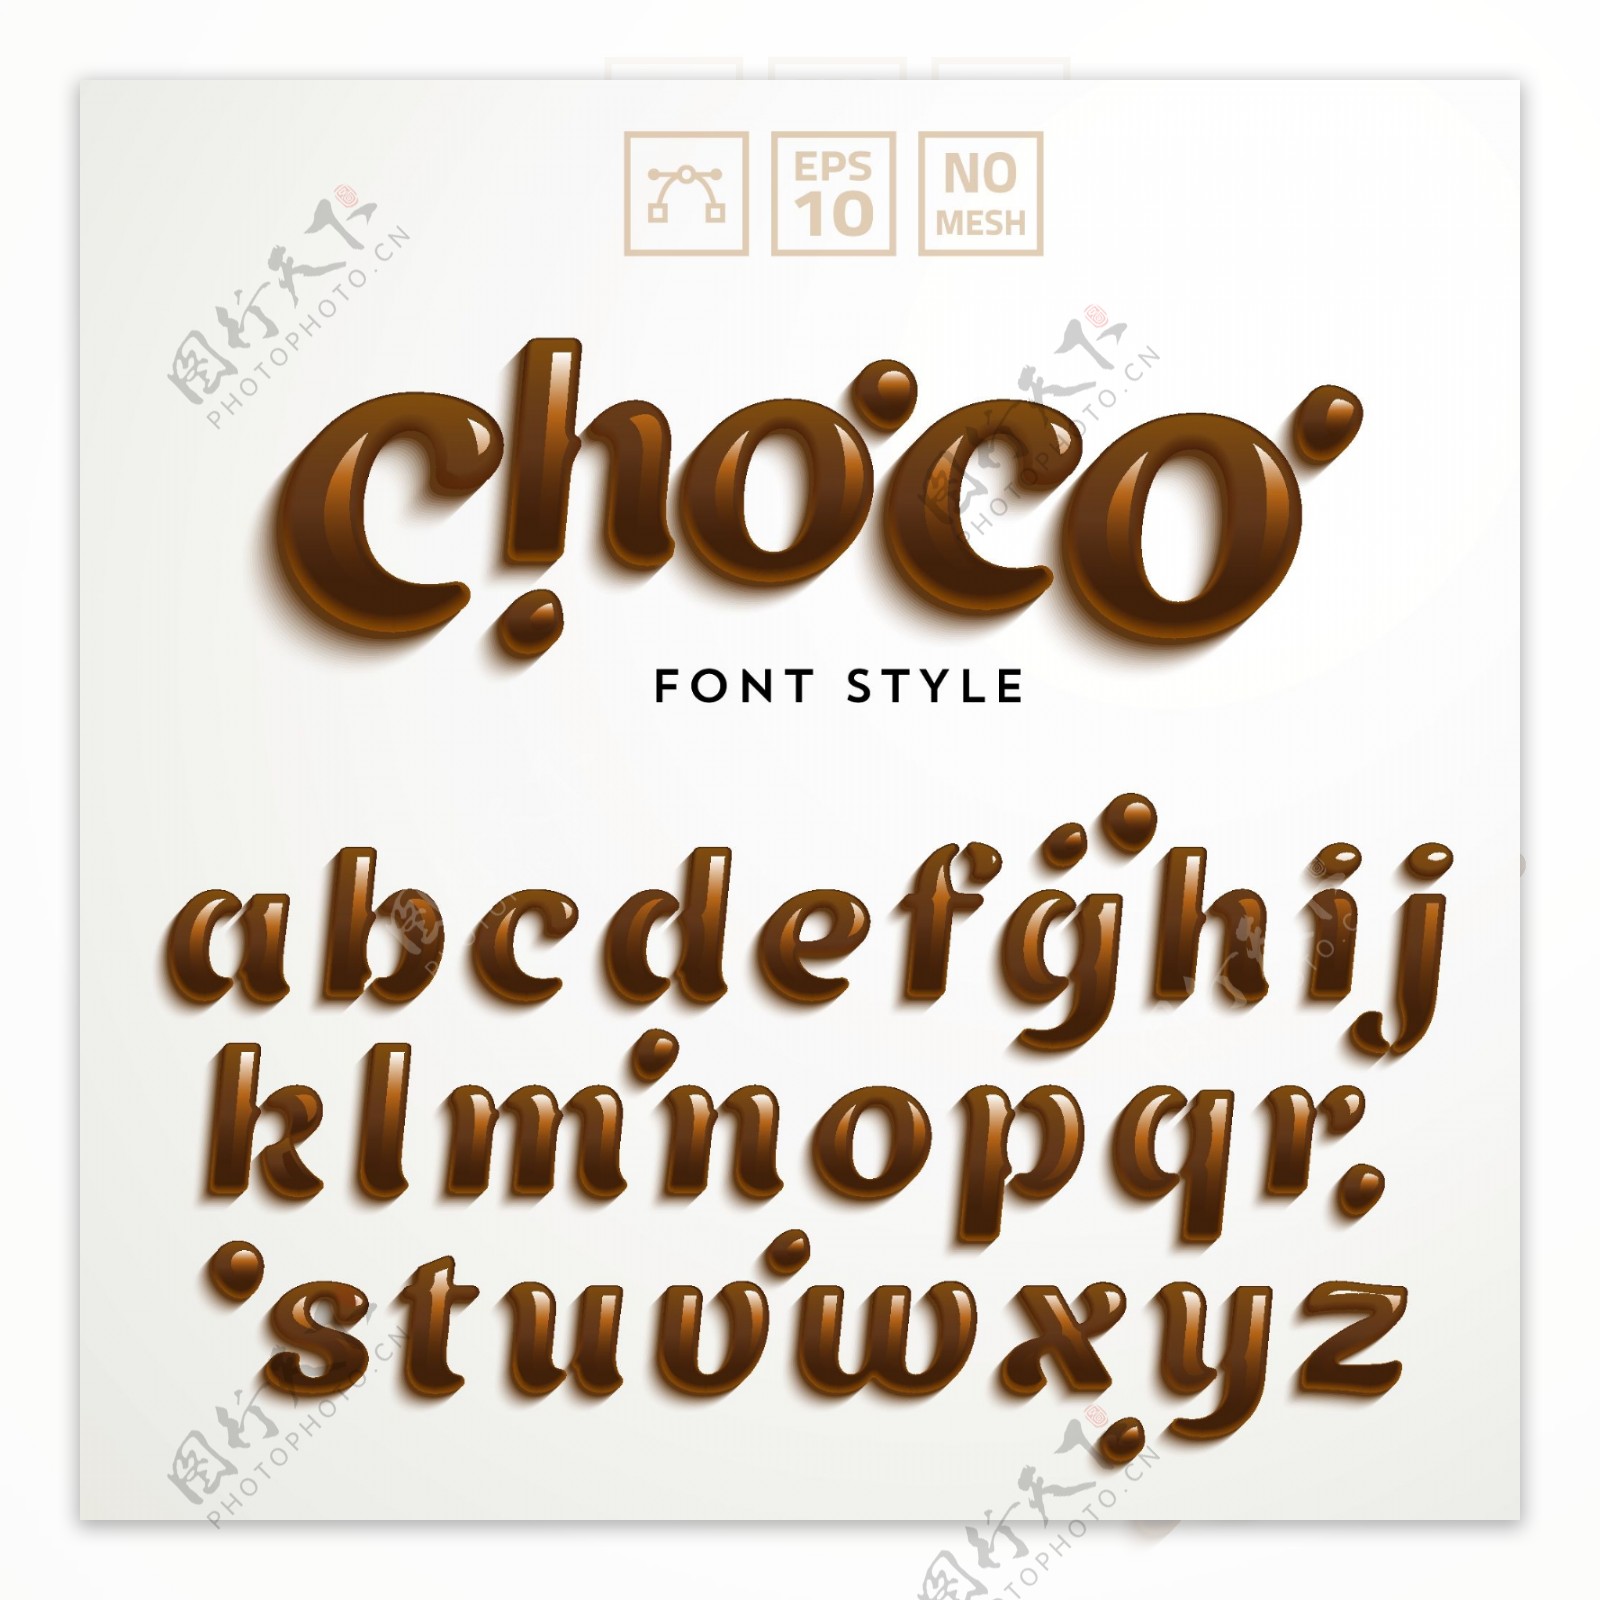 巧克力字母设计矢量素材